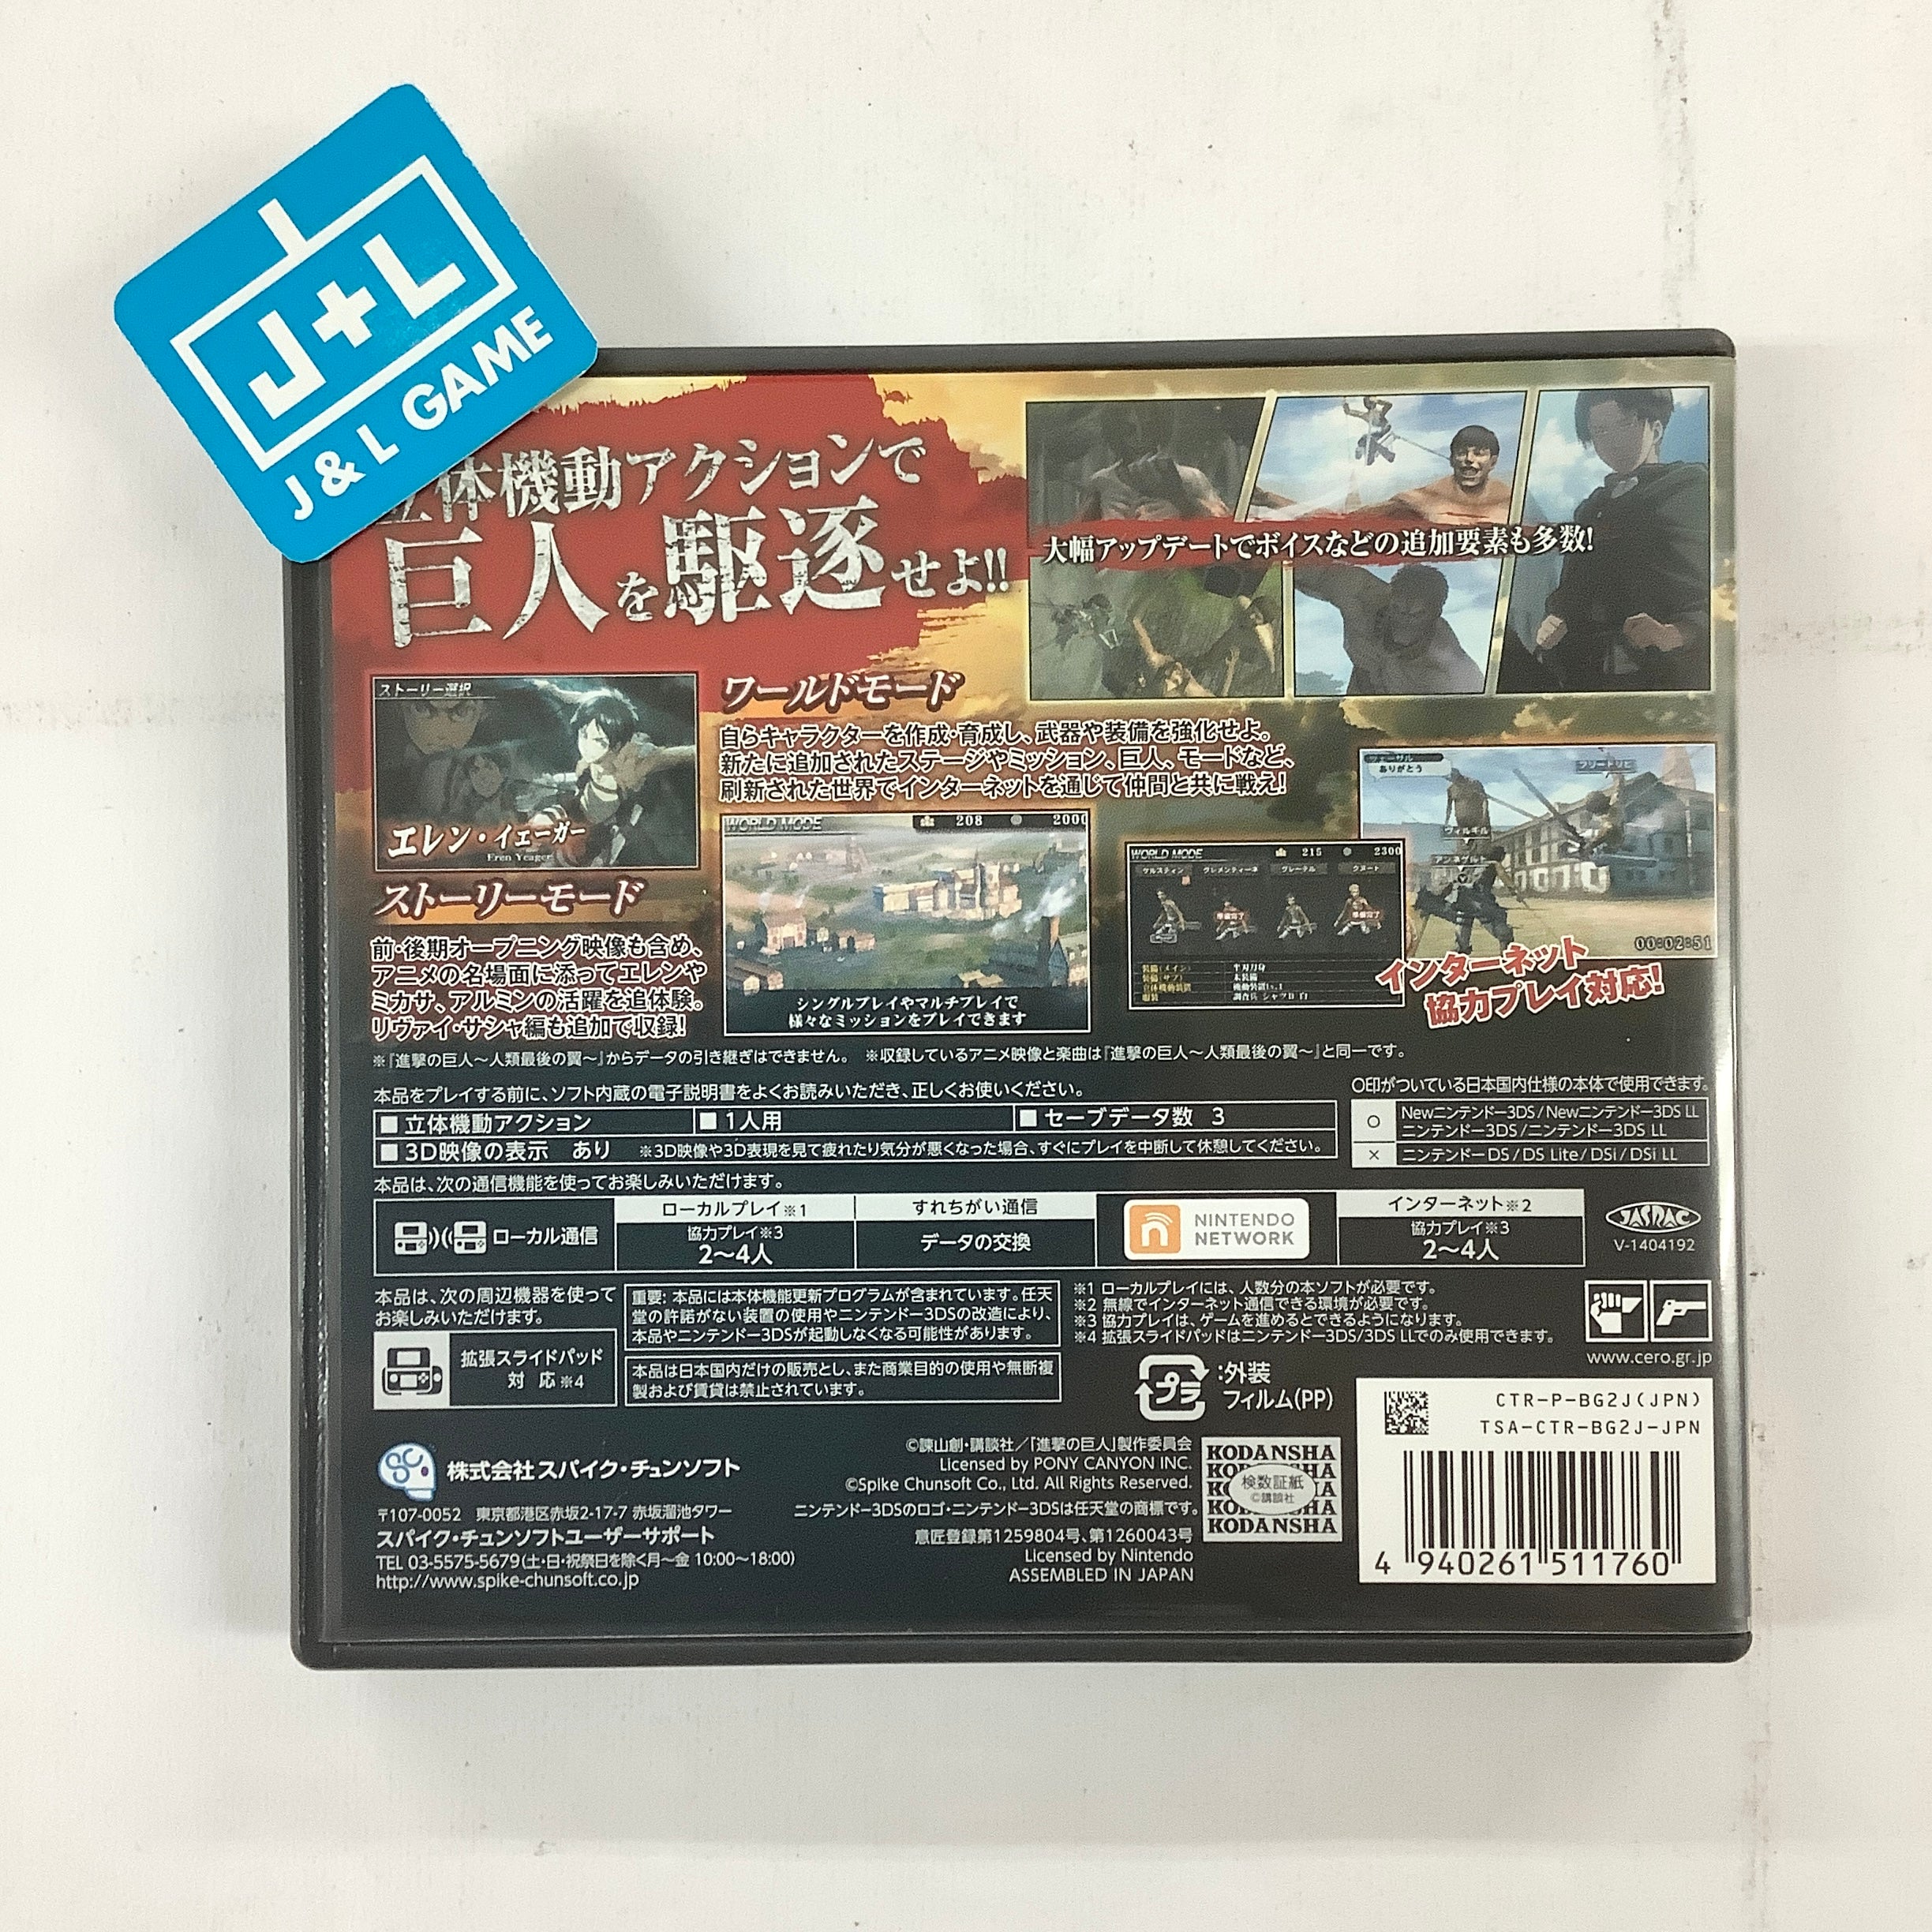 Shingeki no Kyojin: Jinrui Saigo no Tsubasa CHAIN - Nintendo 3DS [Pre-Owned] (Japanese Import) Video Games Spike Chunsoft   